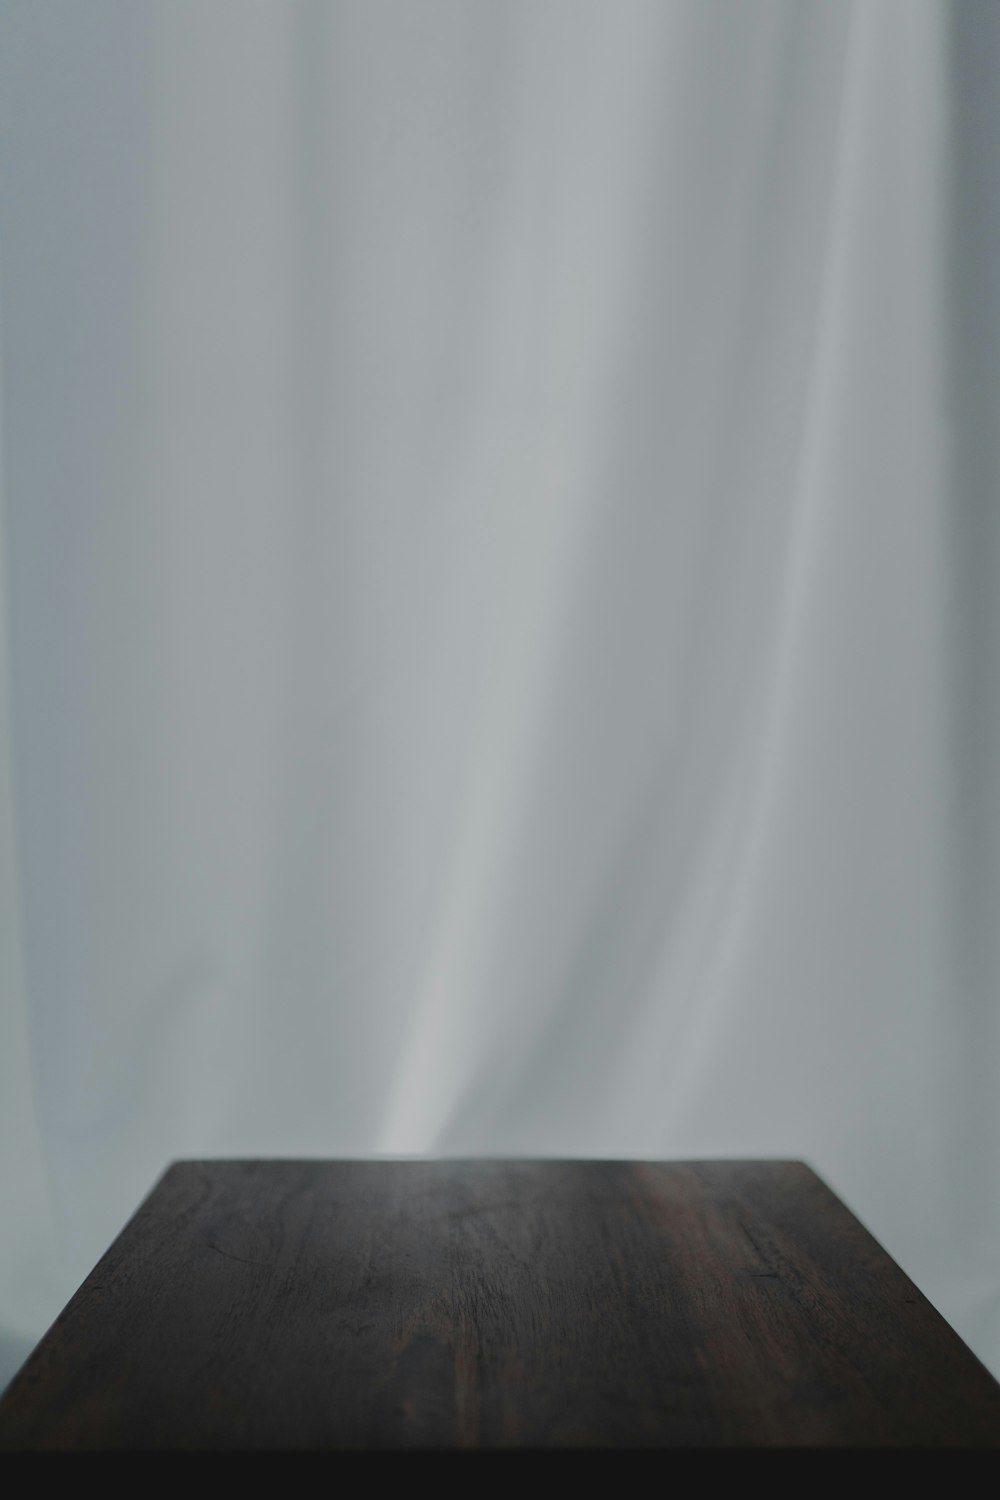 Tessuto bianco vicino al tavolo in legno marrone